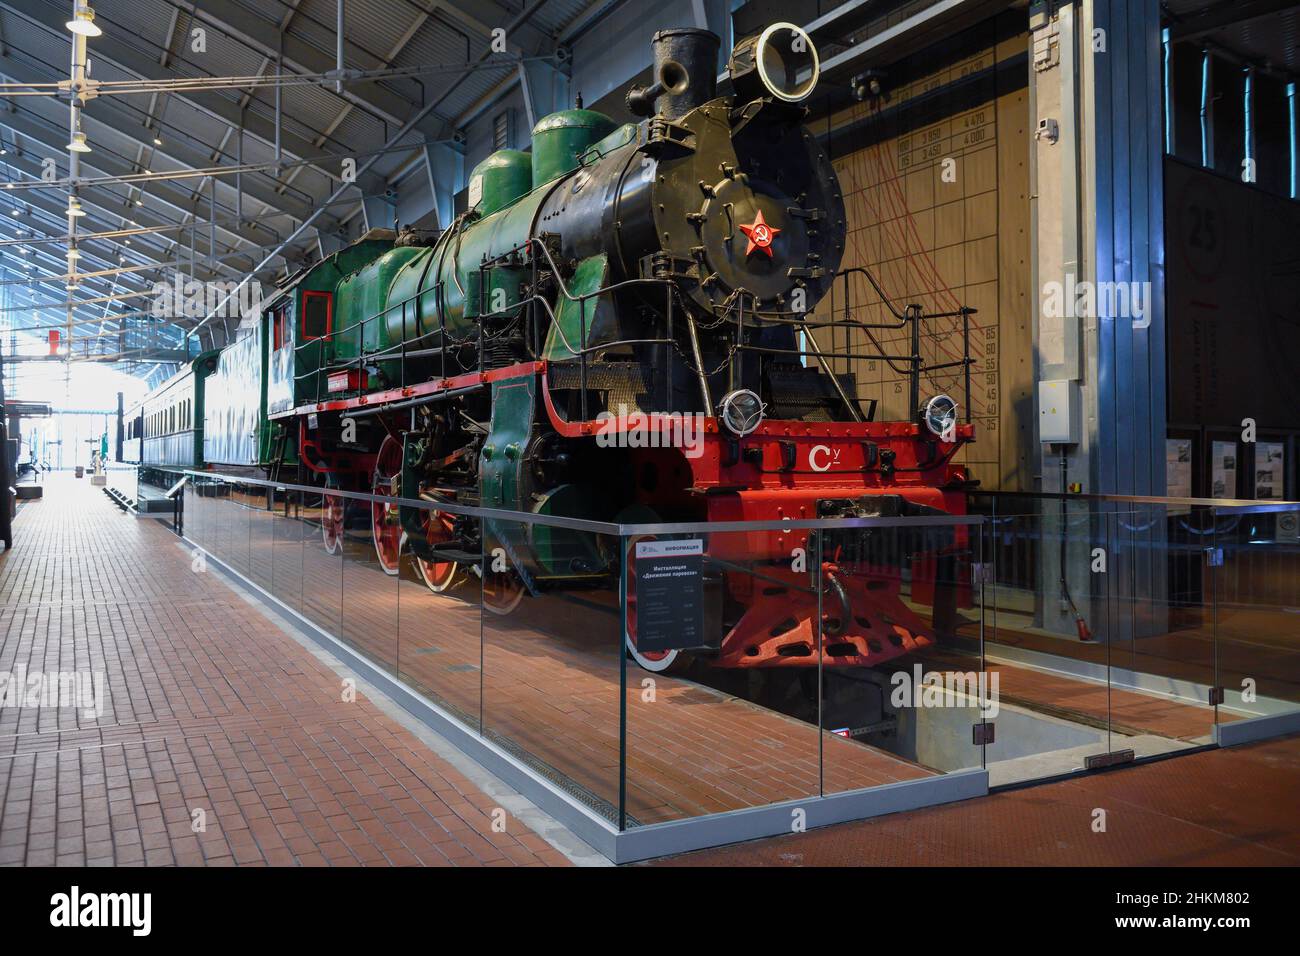 SANKT PETERSBURG, RUSSLAND - 12. JANUAR 2022: Sowjetische Personenlokomotive der Serie "Su" (Sormovsky verstärkt) im Museum der Russischen Eisenbahnen Stockfoto